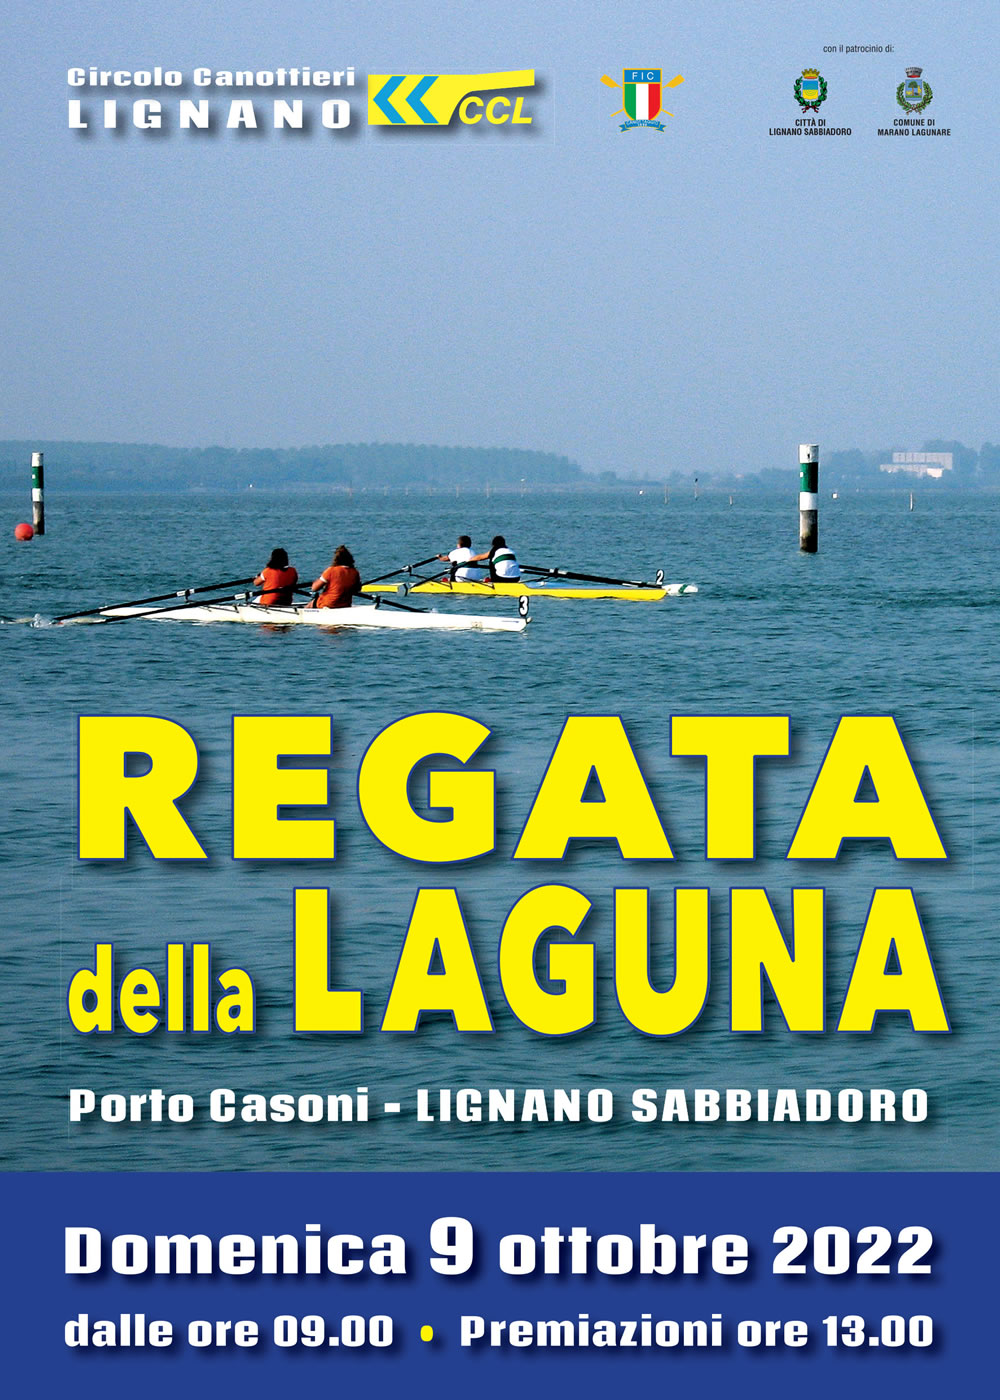 Regata della laguna Lignano